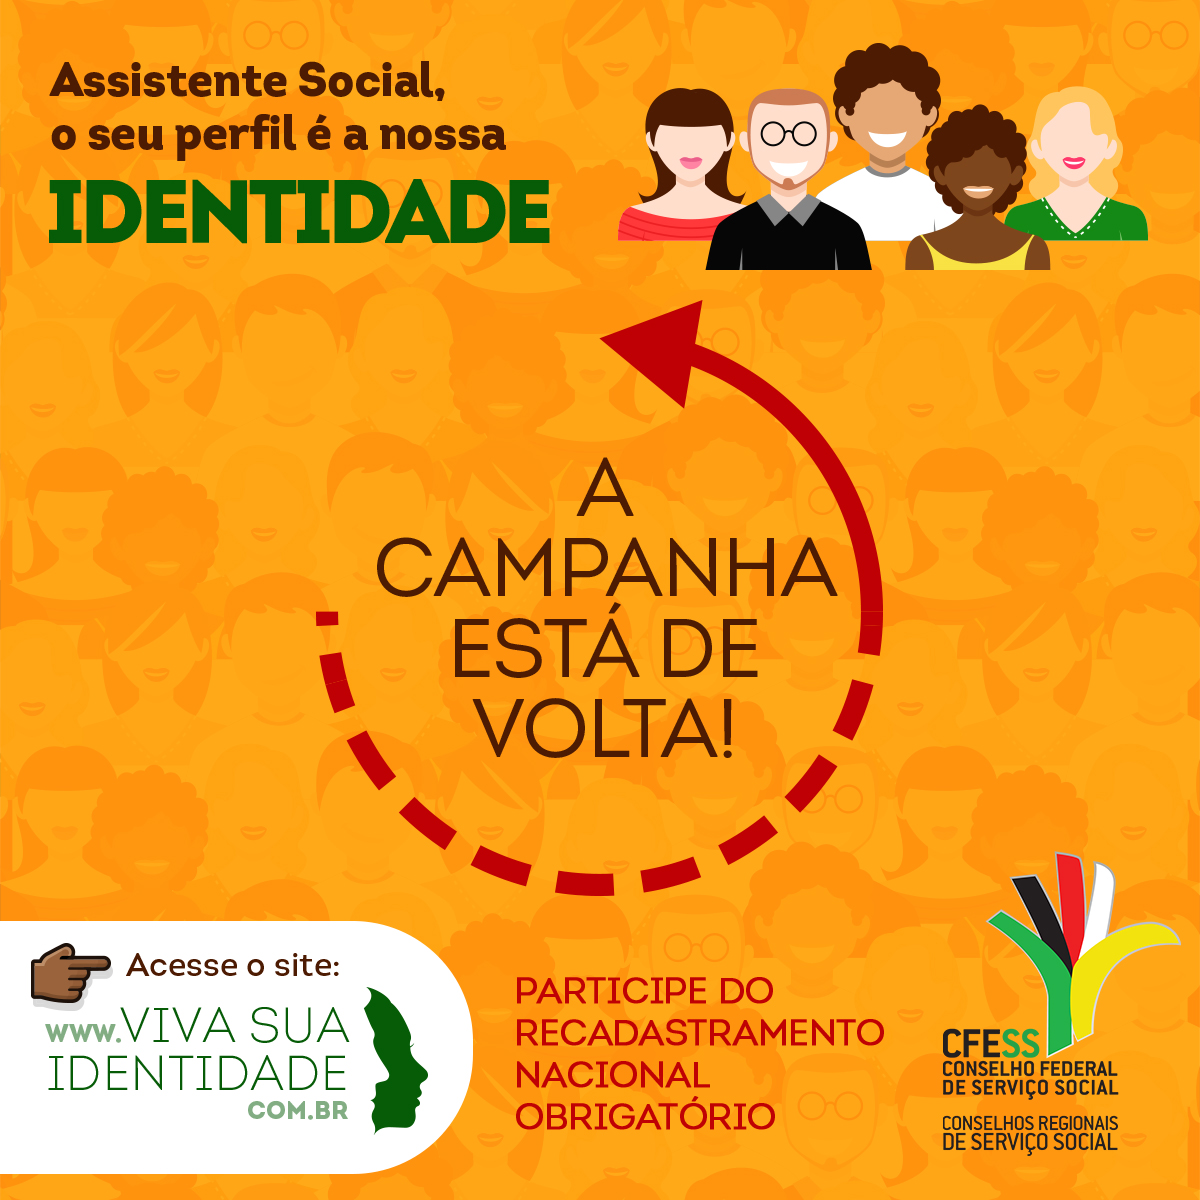 Imagem mostra ilustrações de pessoas de várias raças, sorrindo, representando assistentes sociais de todo o Brasil, e uma chamada informando que a campanha está de volta